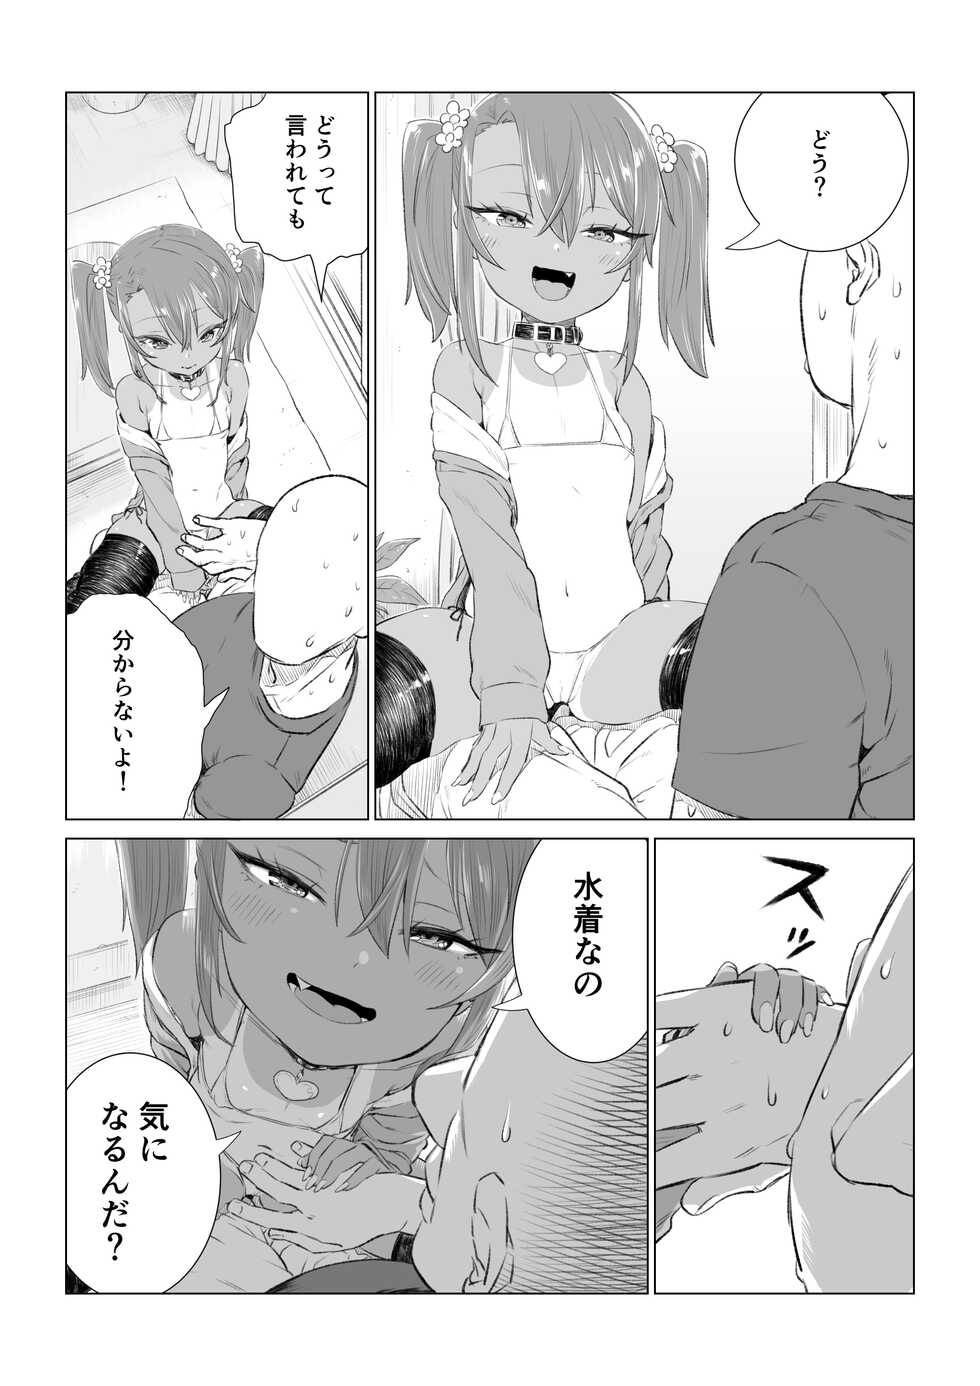 [Ebisujima Misato] Yuma-chan's Web manga [Ongoing] - Page 35